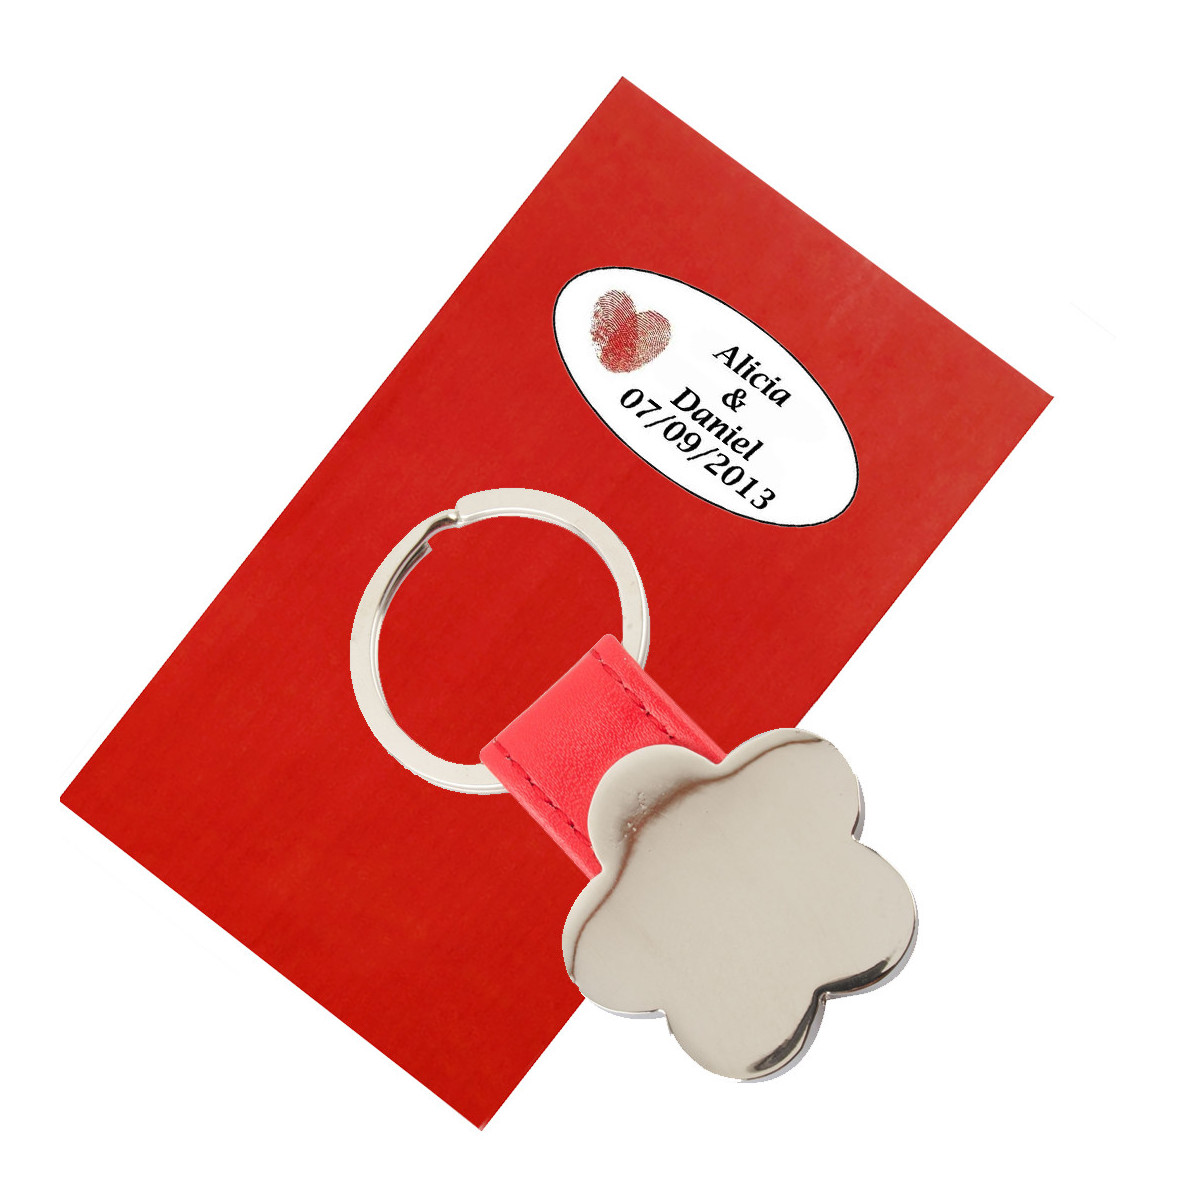 Porte clés en forme de fleur avec similicuir dans une enveloppe cadeau et adhésif personnalisé avec texte